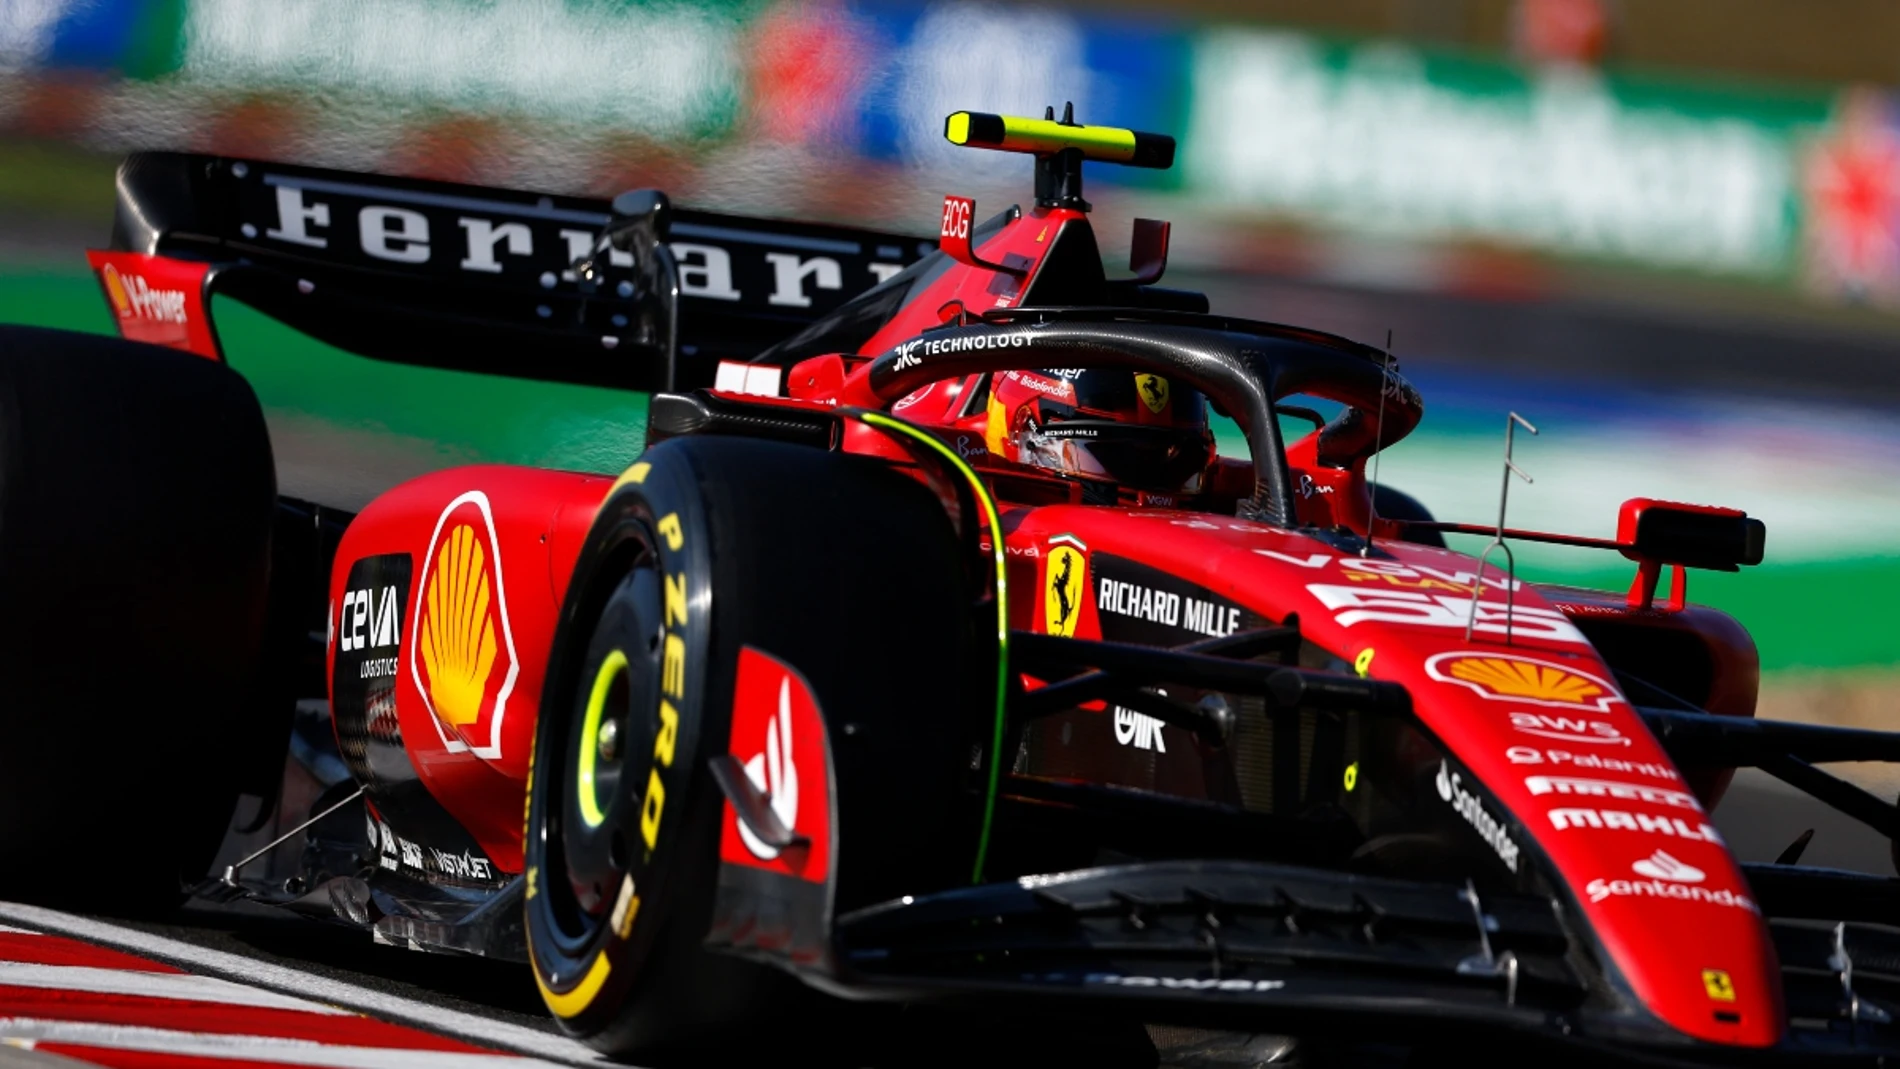 Carlos Sainz, con el Ferrari